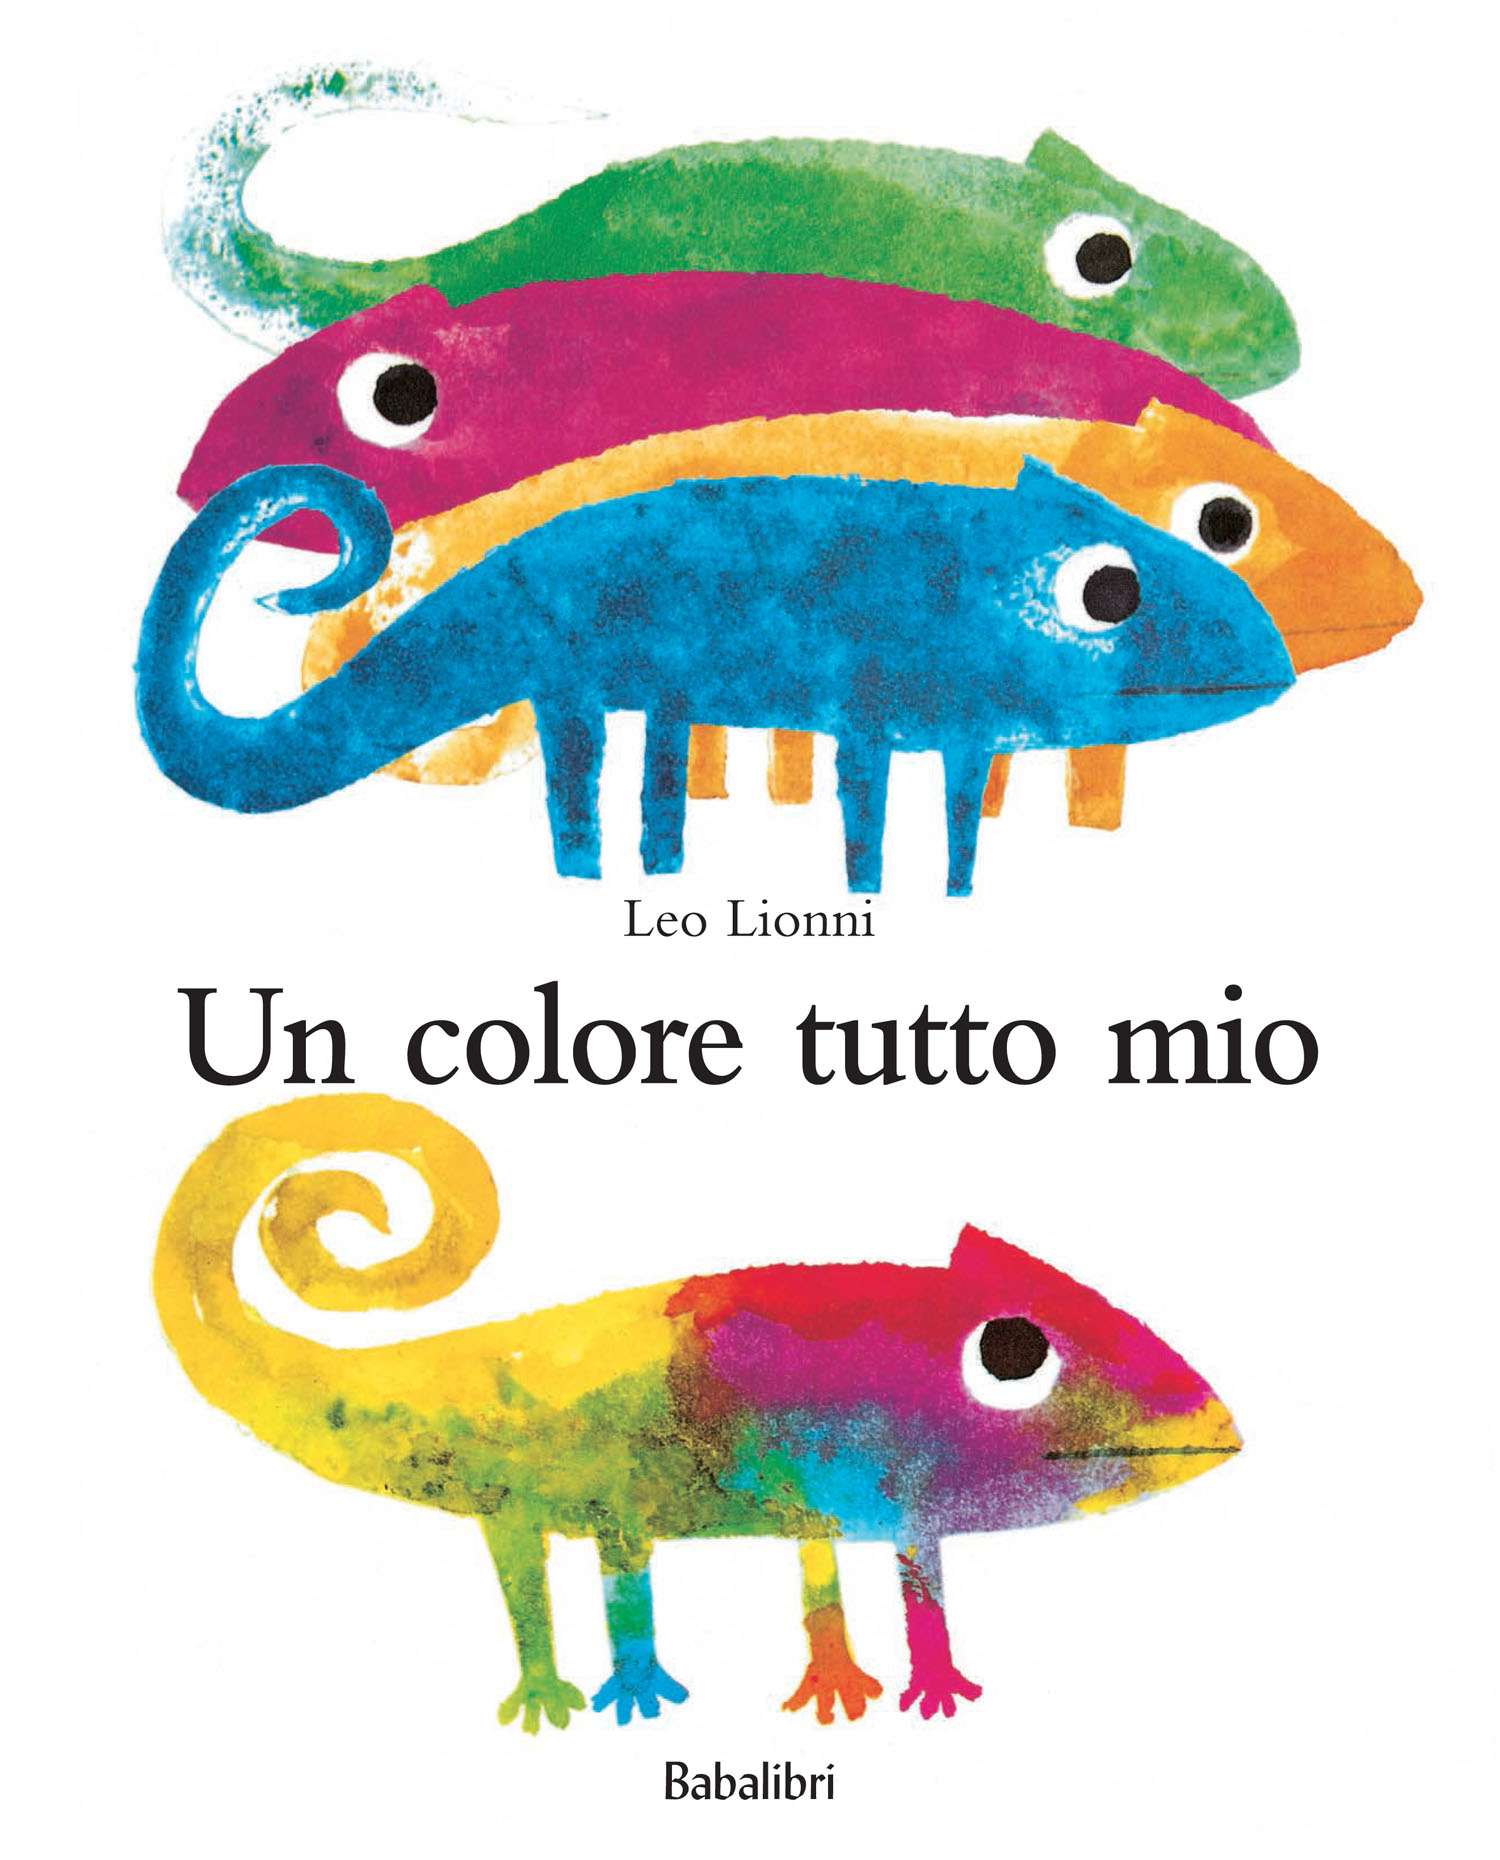 Come insegnare i colori ai bambini e capire l'effetto che hanno su di loro  • LaCOMICSkids